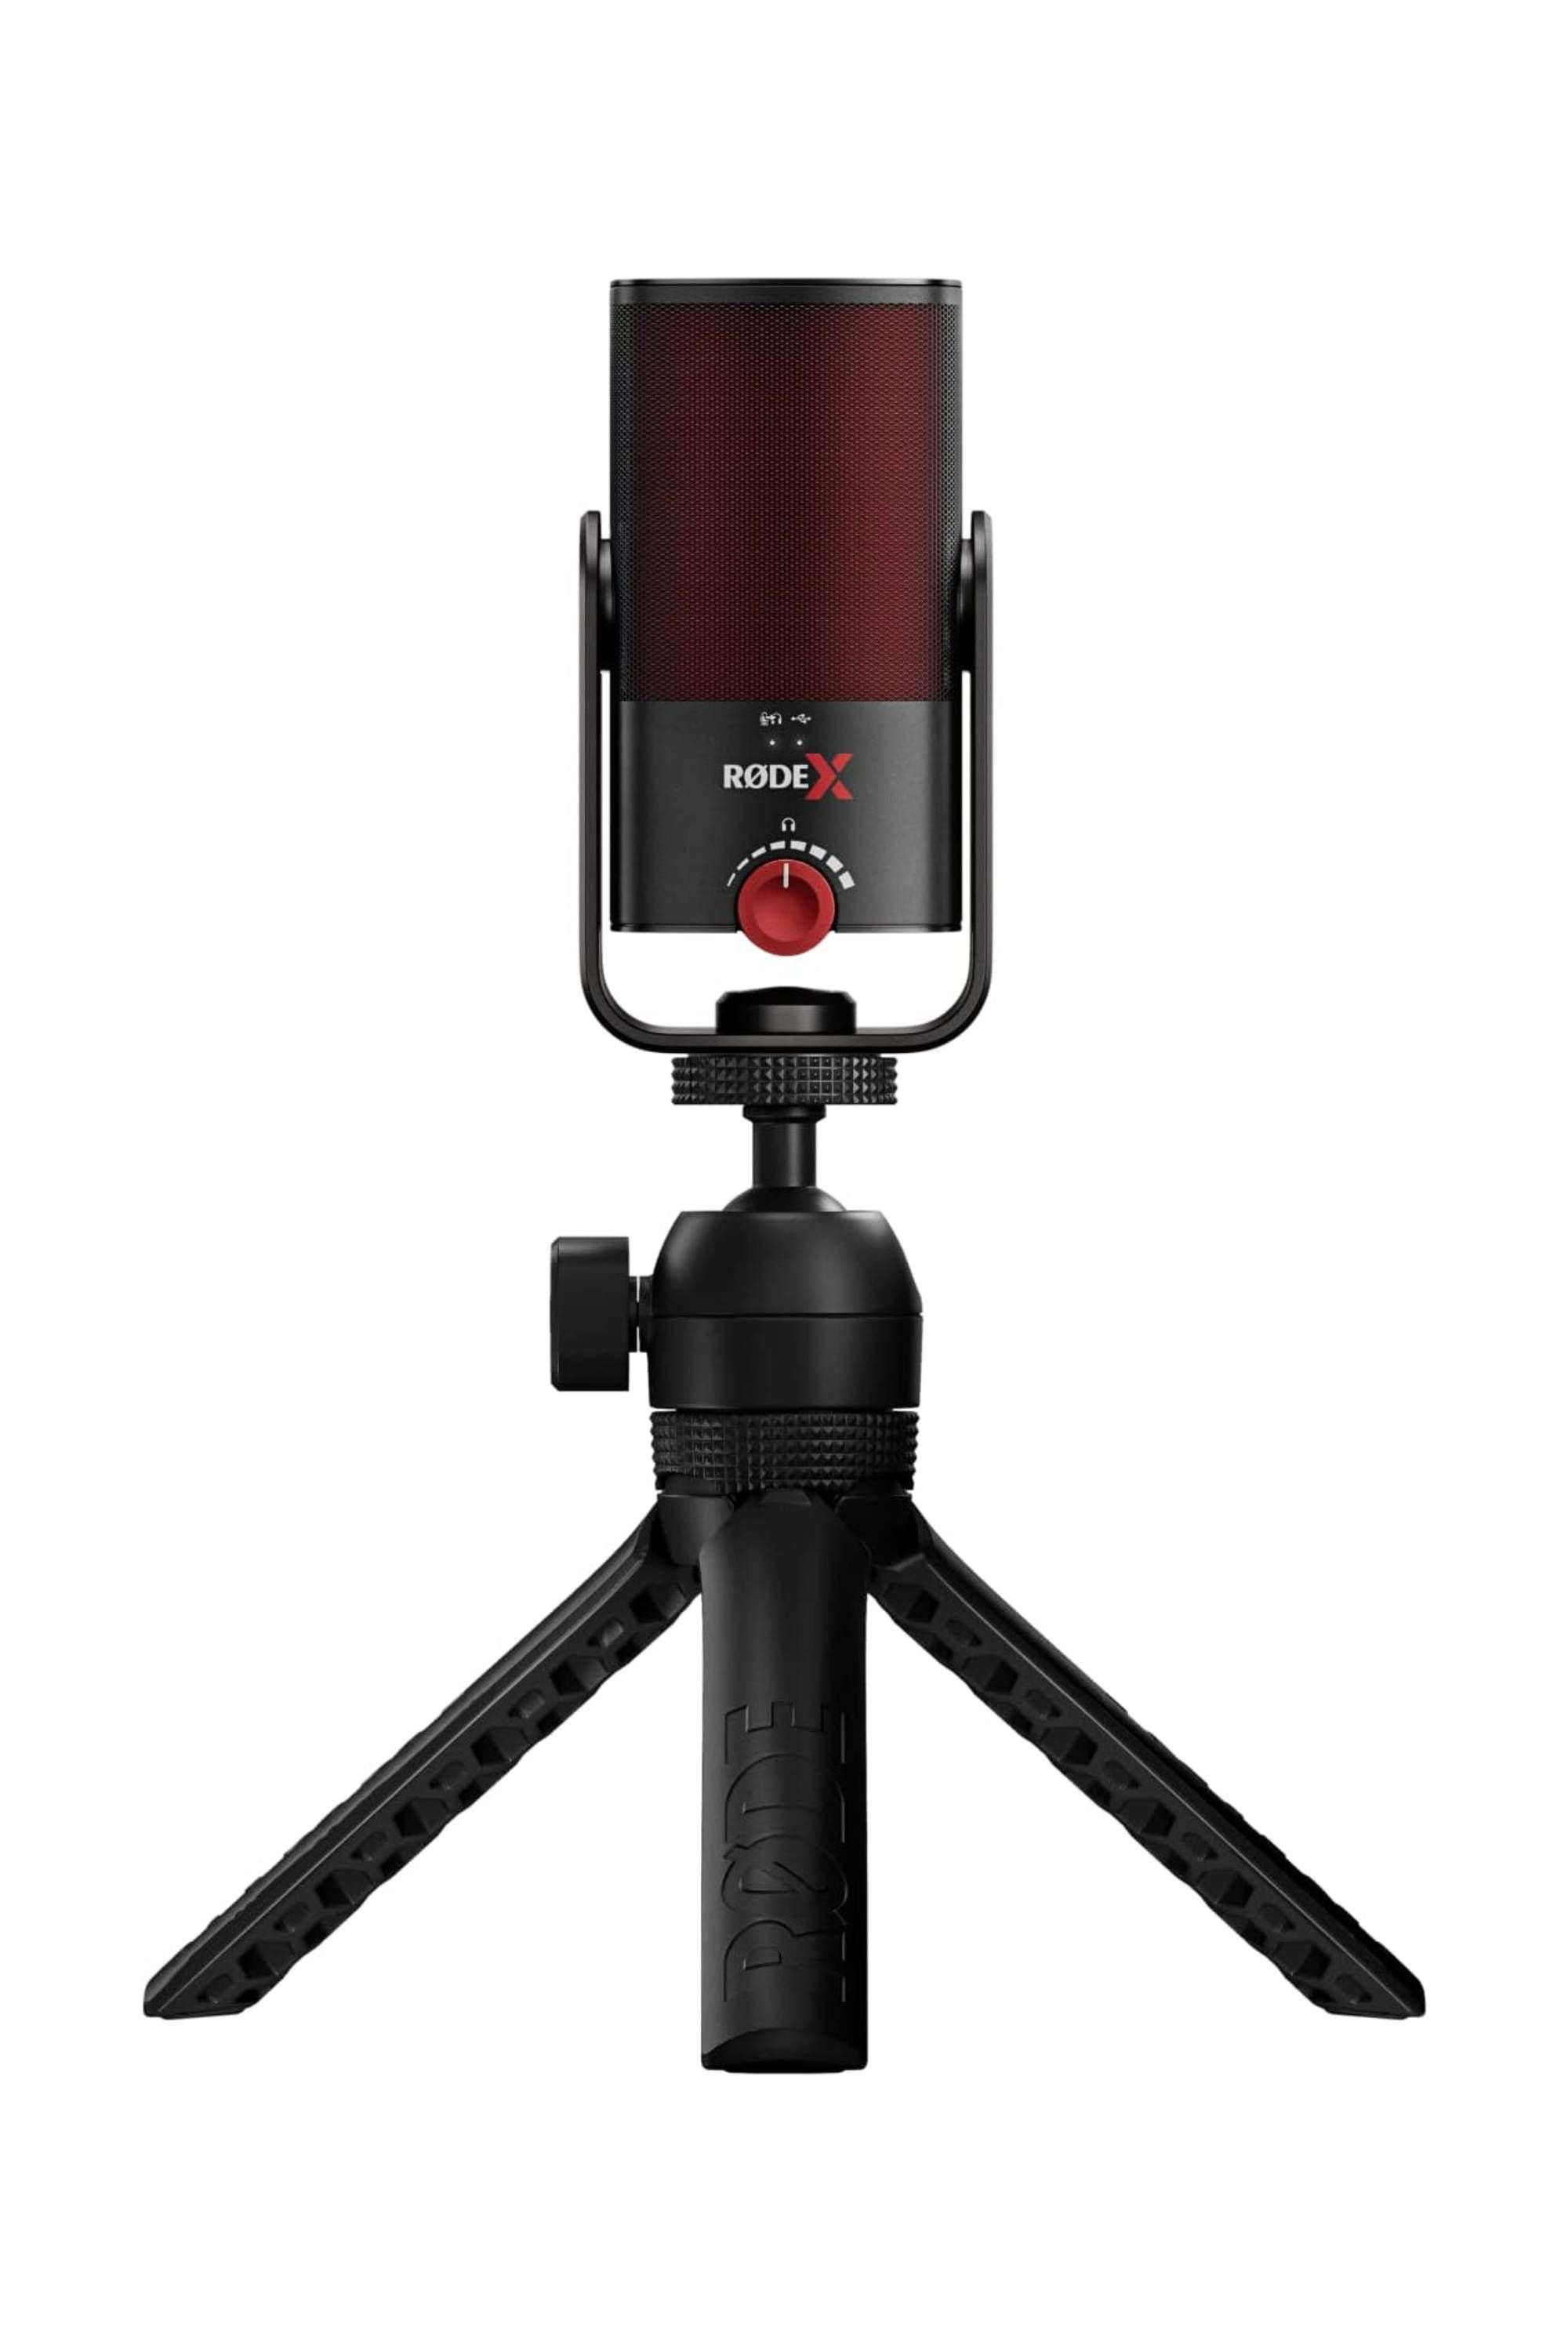 Rode X XCM-50 Kondensatormikrofon